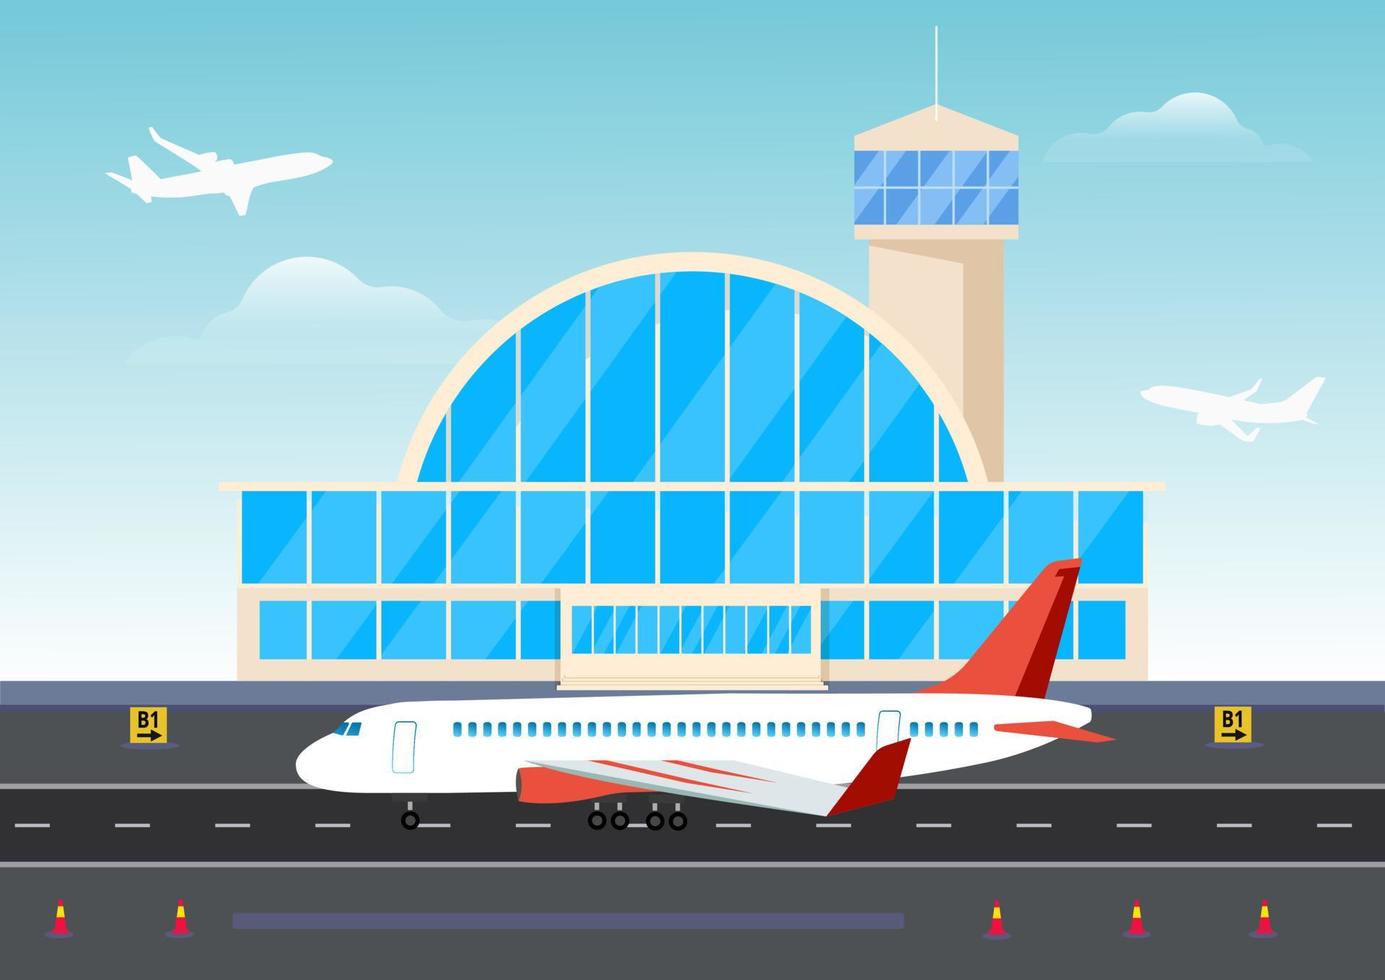 flygplatsbyggnader och flygplan på landningsbanan. flygplansplanering i flygplatsbyggnad av flygplatsens landningsbanas skylineillustration vektor